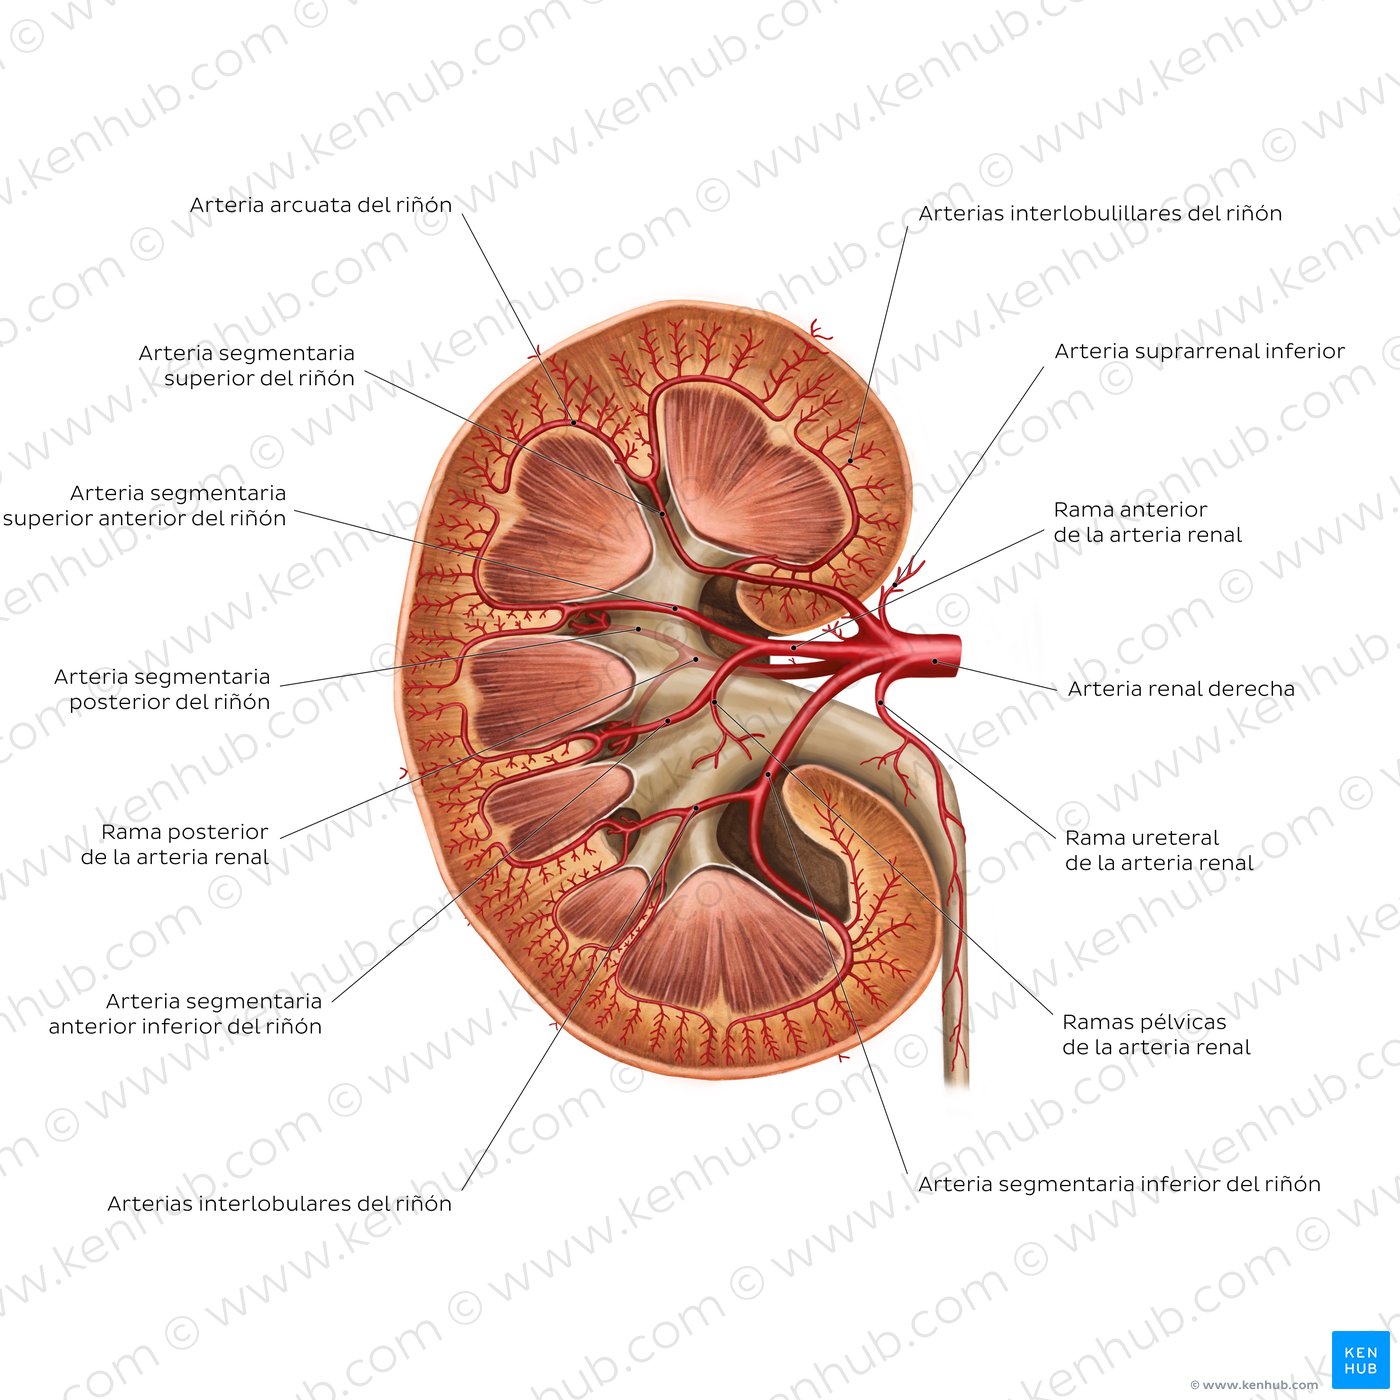 Arteria renal